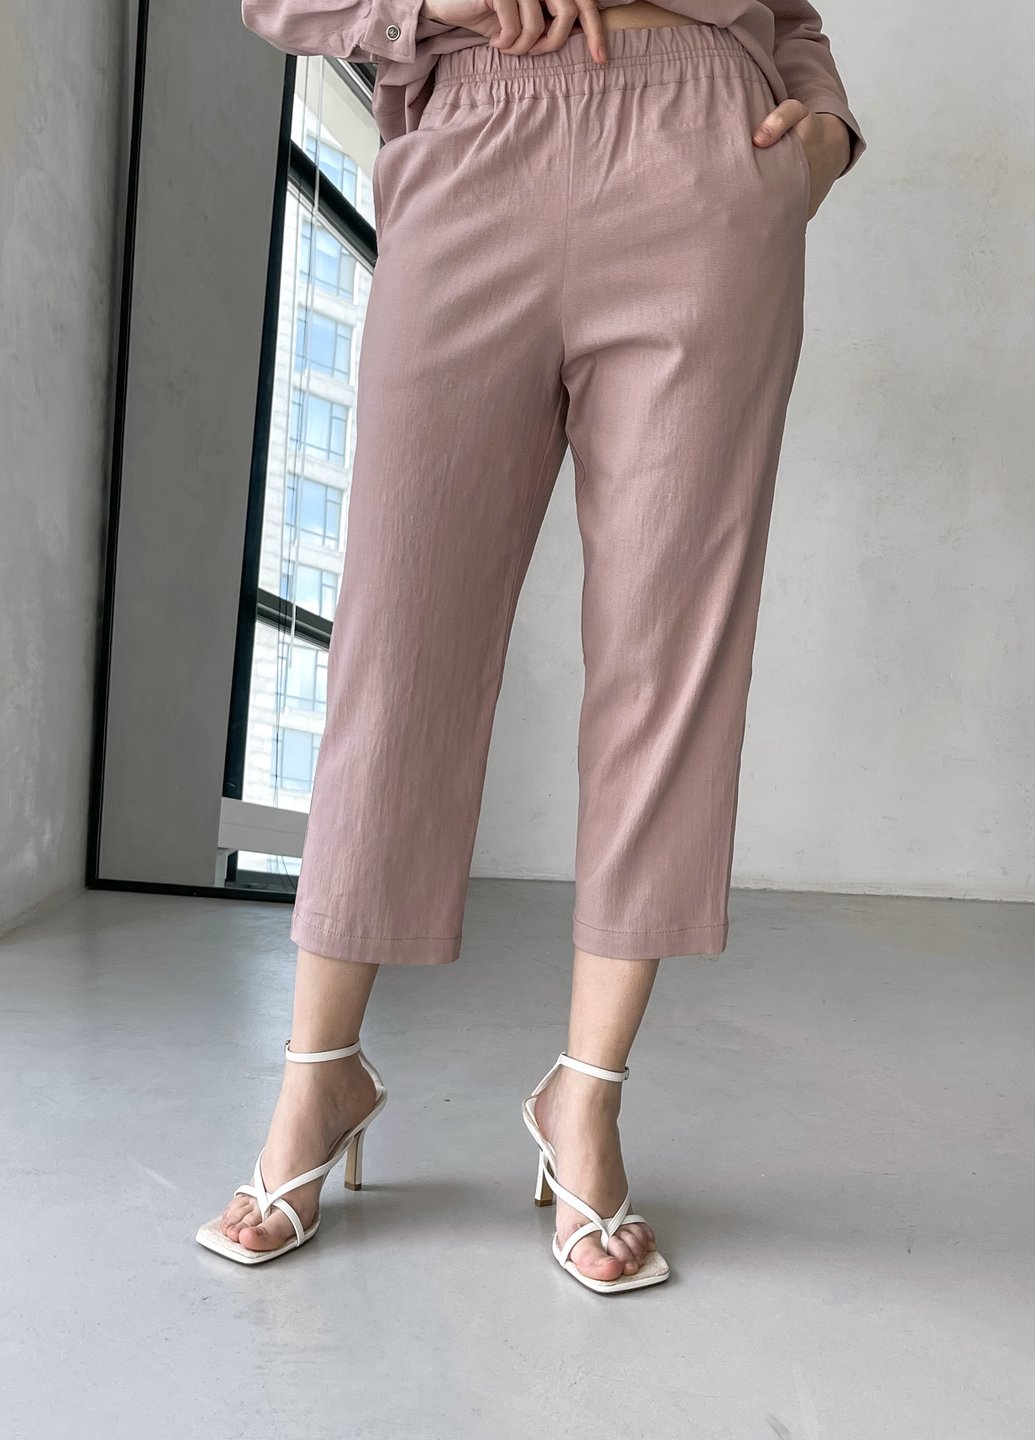 Льняные брюки женские чиносы Merlini Прованс 600000163, размер 42-44